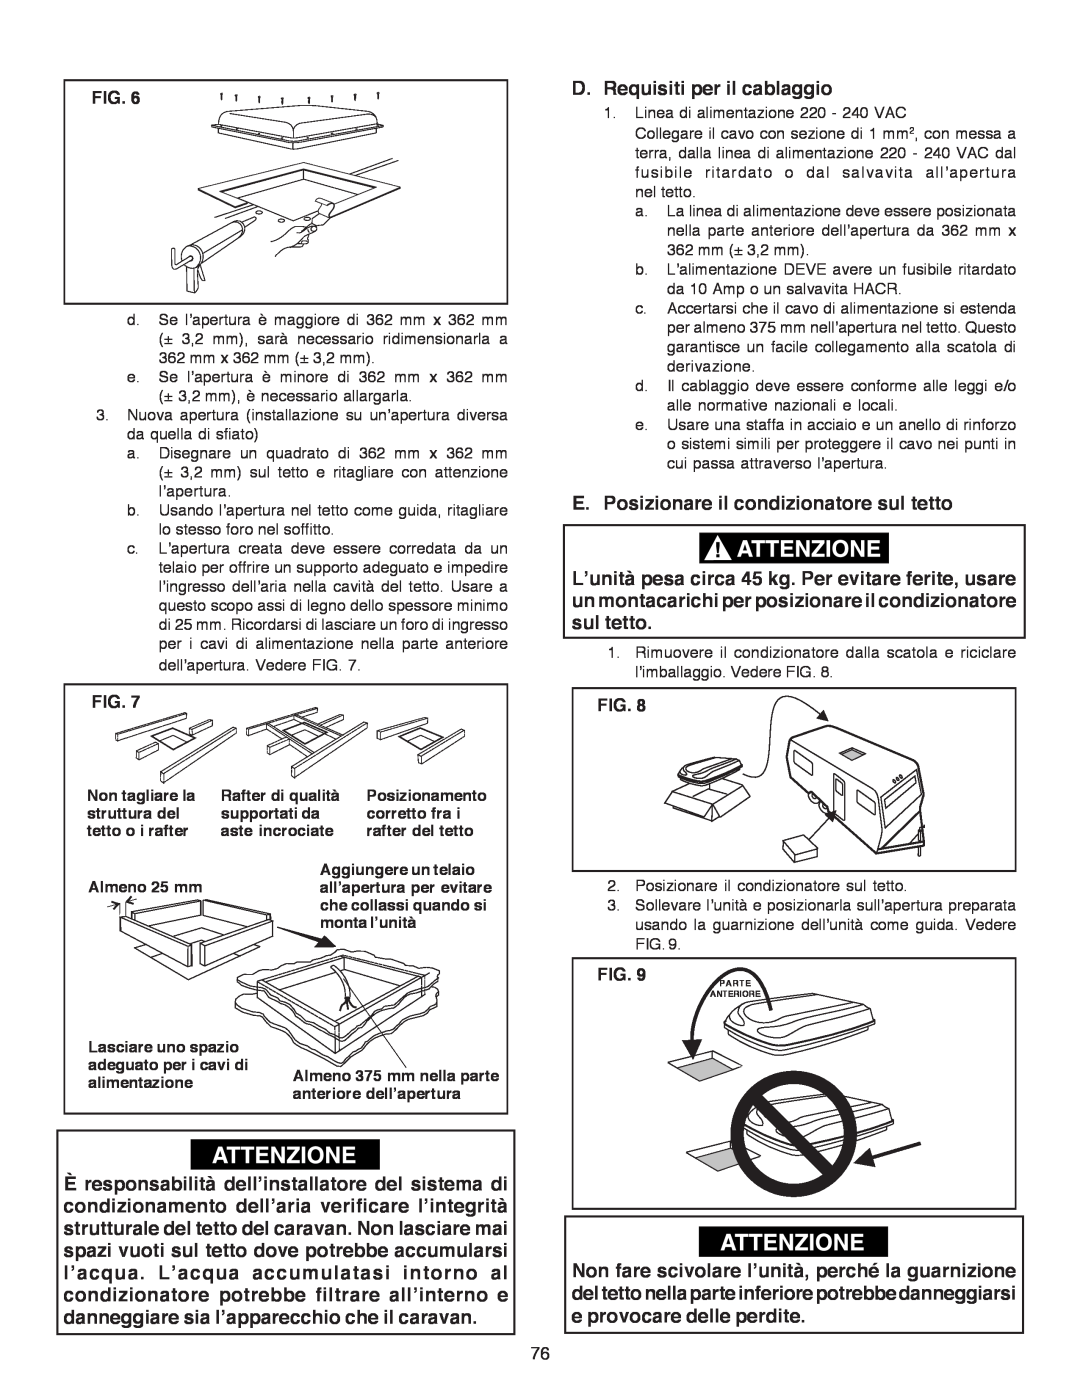 Dometic B3200 manual D.Requisiti per il cablaggio, E.Posizionare il condizionatore sul tetto, Fig 